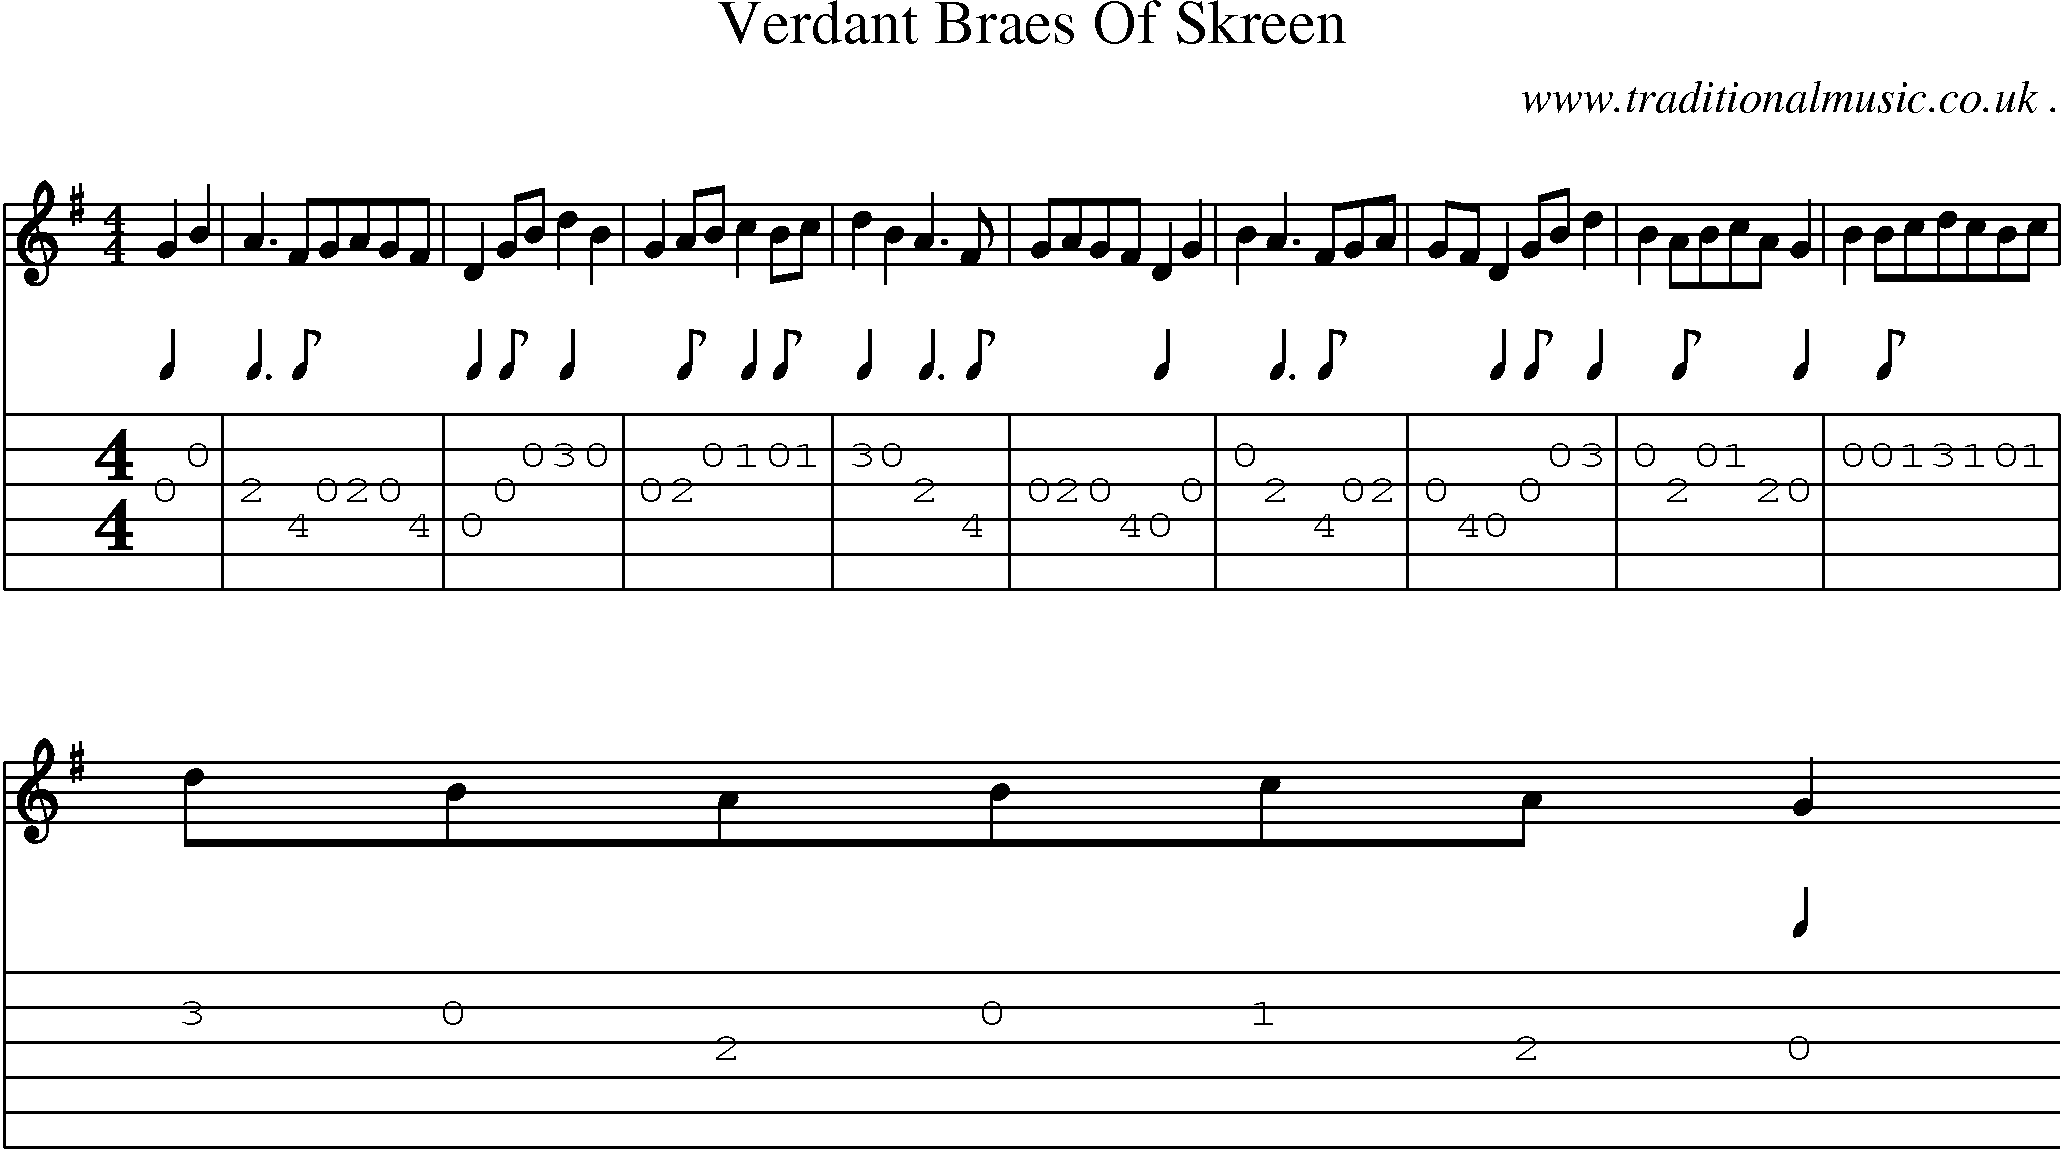 Sheet-Music and Guitar Tabs for Verdant Braes Of Skreen